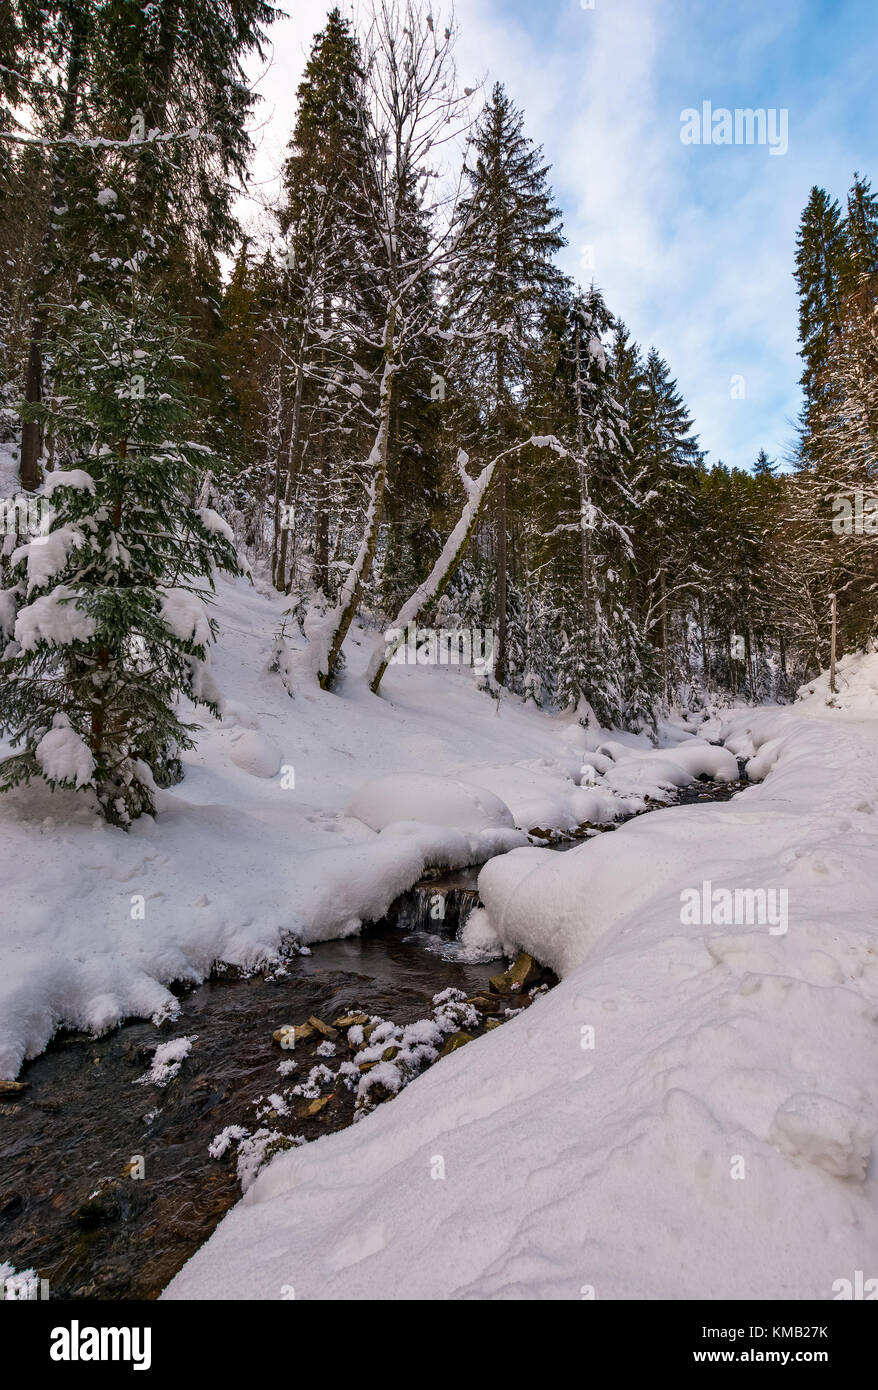 Brook con cascate in inverno bosco invernale incantevole paesaggio naturale Foto Stock